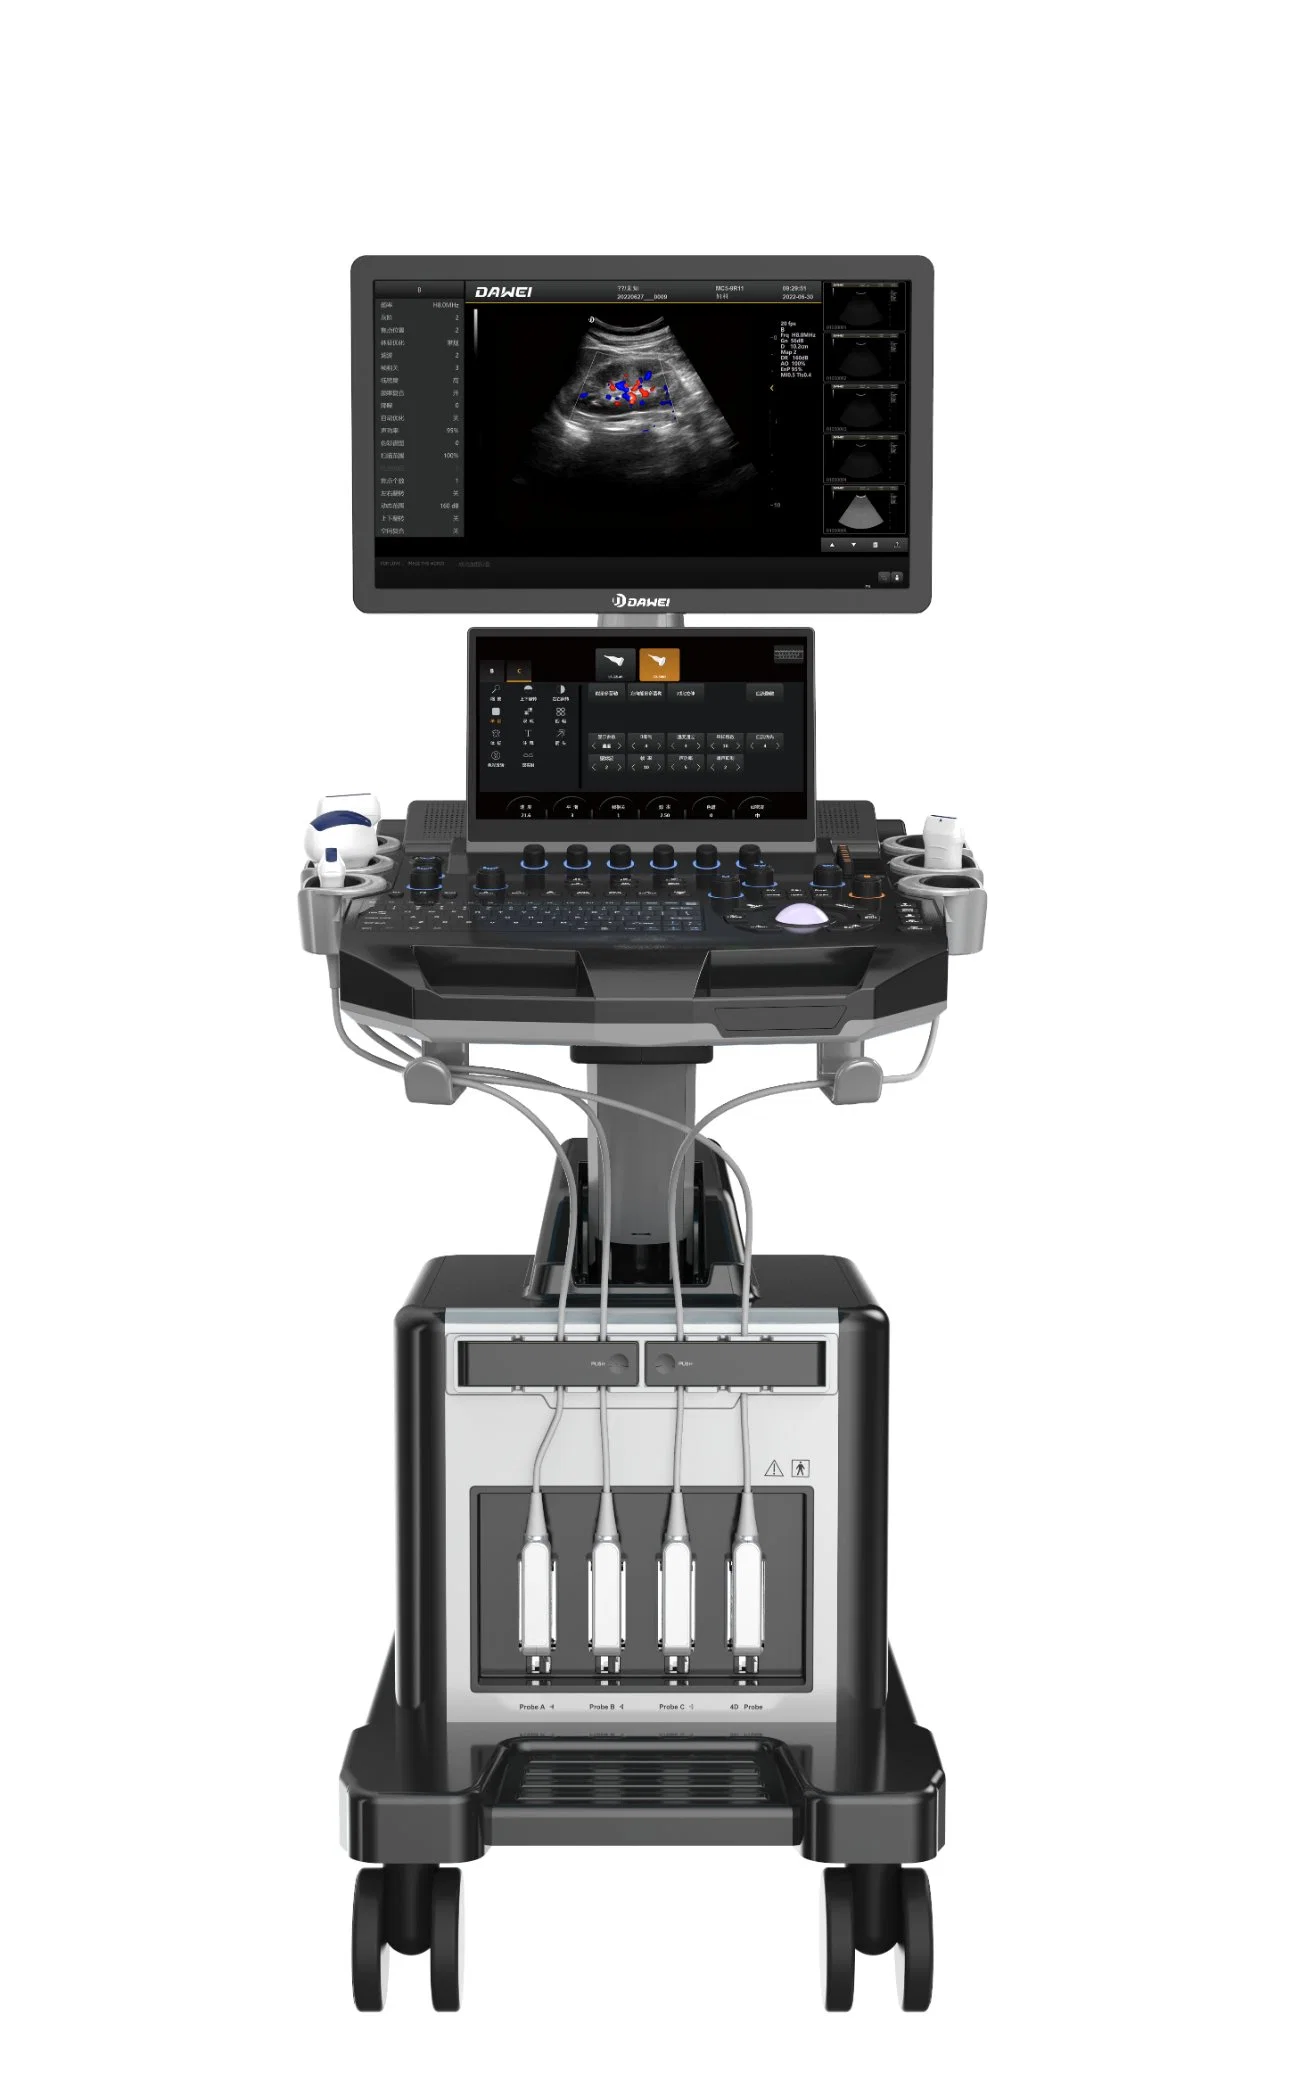 جهاز التصوير بالموجات فوق الصوتية بالموجات الدوبلر الملونة من نوع 4D Clear Image Trolley Type Dwt30 لصحة المرأة مع مسبار 4D